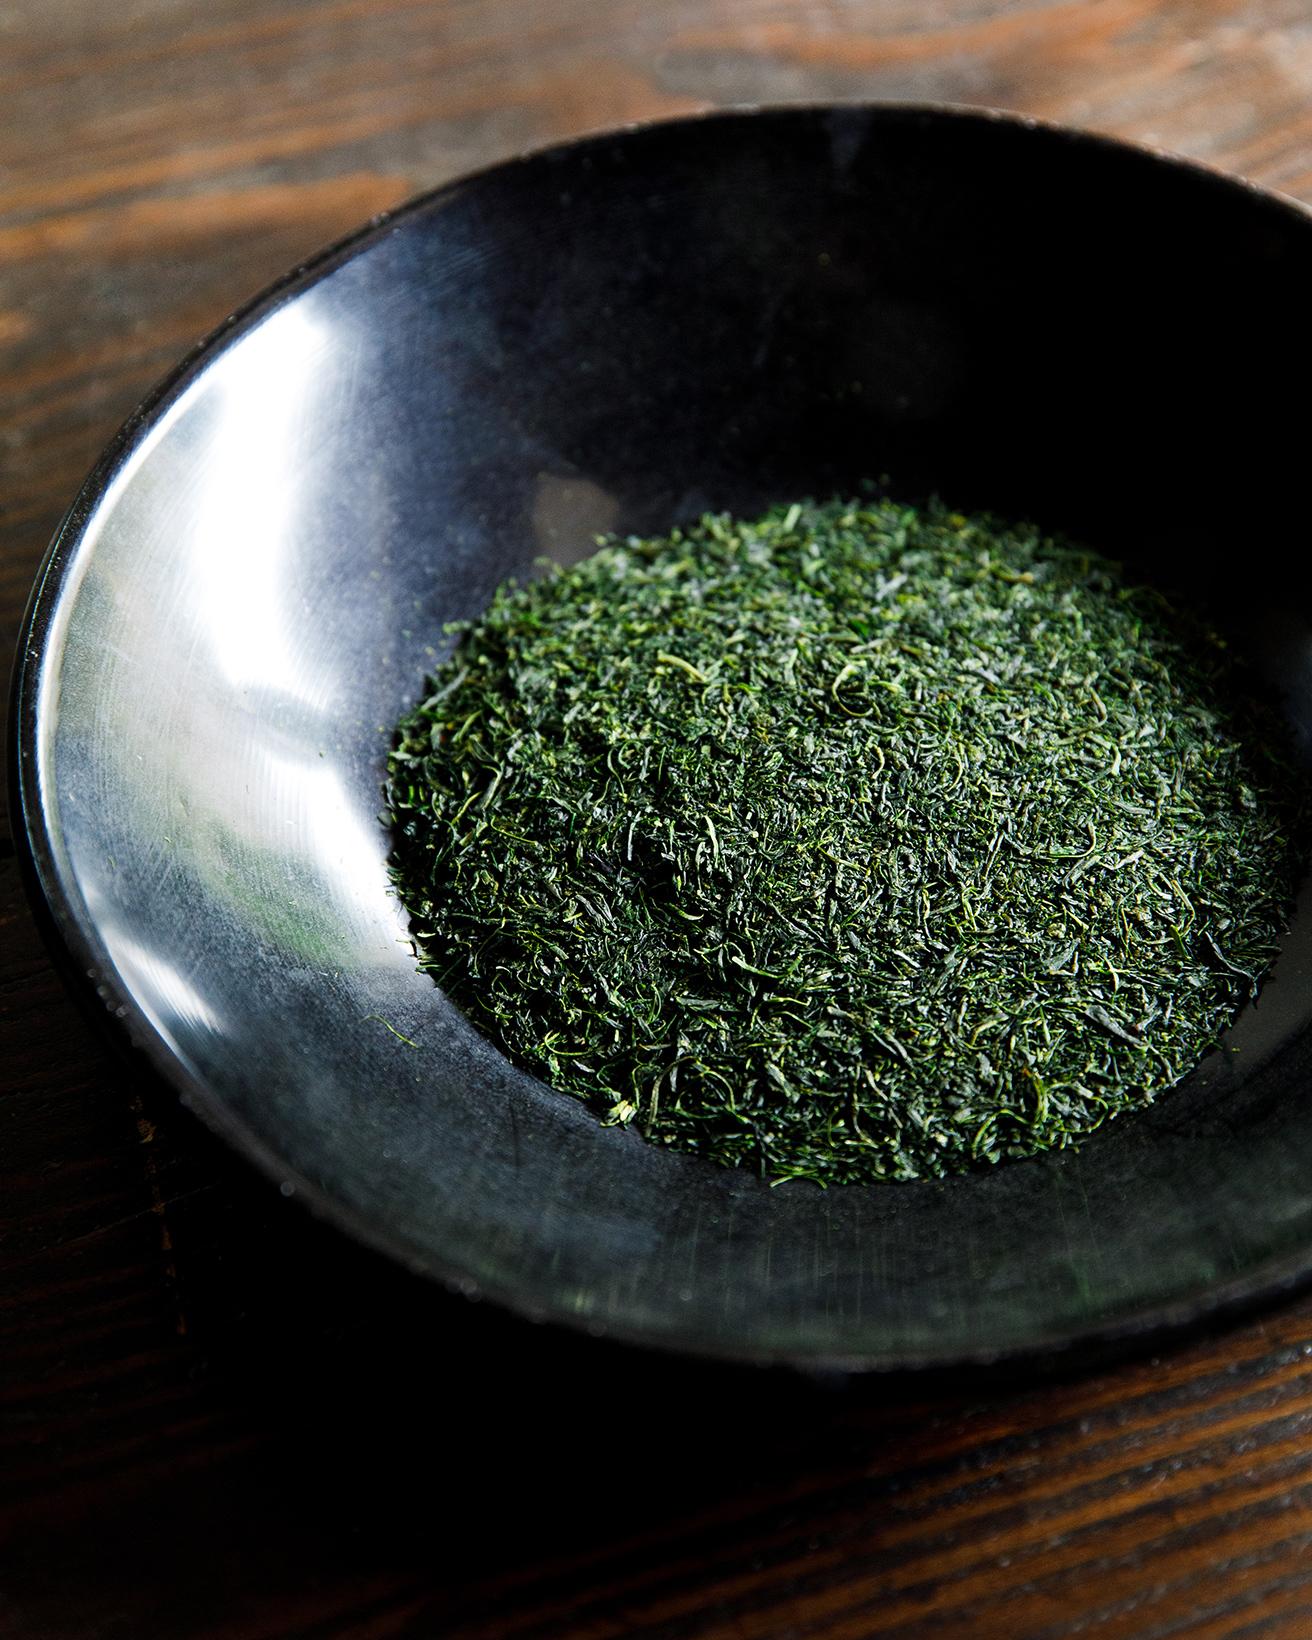 ぐり茶と呼ばれる、丸い茶葉が特徴の嬉野茶。味が凝縮された柔らかい葉のみを収穫するため、この形状となる。